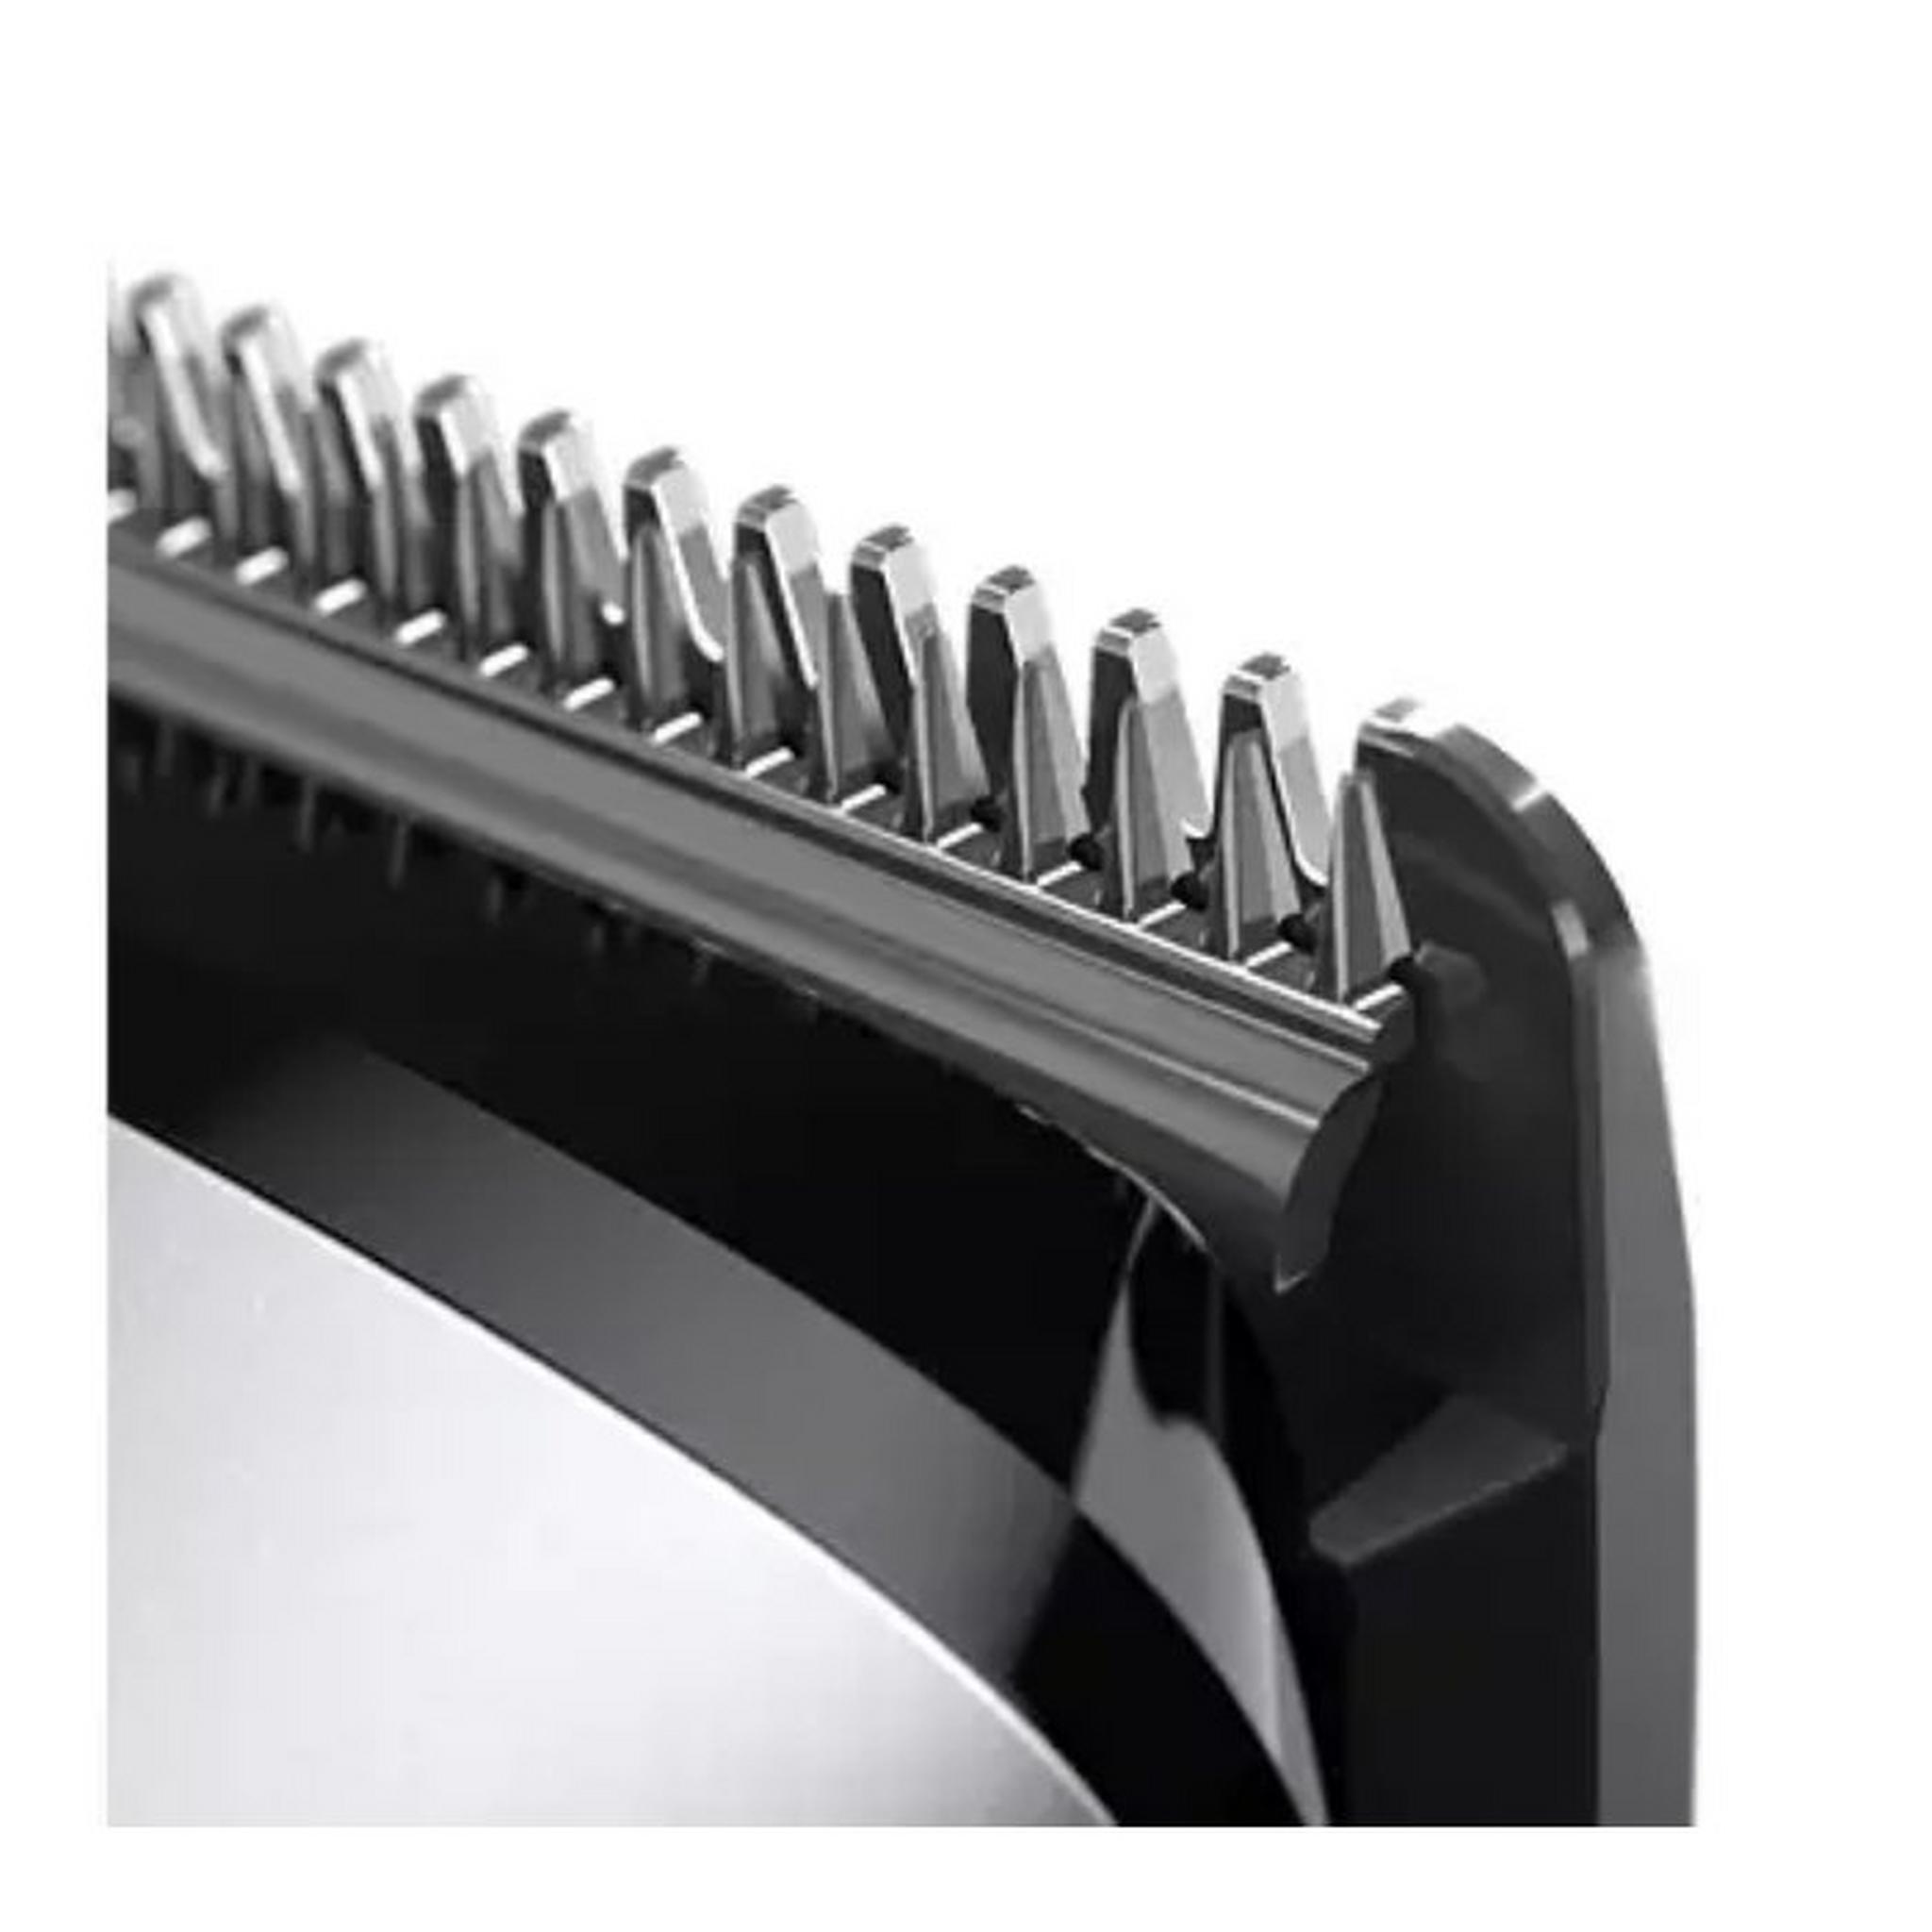 ماكينة حلاقة متعددة الاستخدامات 12 في 1 للوجه والشعر والجسم من فيليبس Series 9000، MG9710/93 - أسود